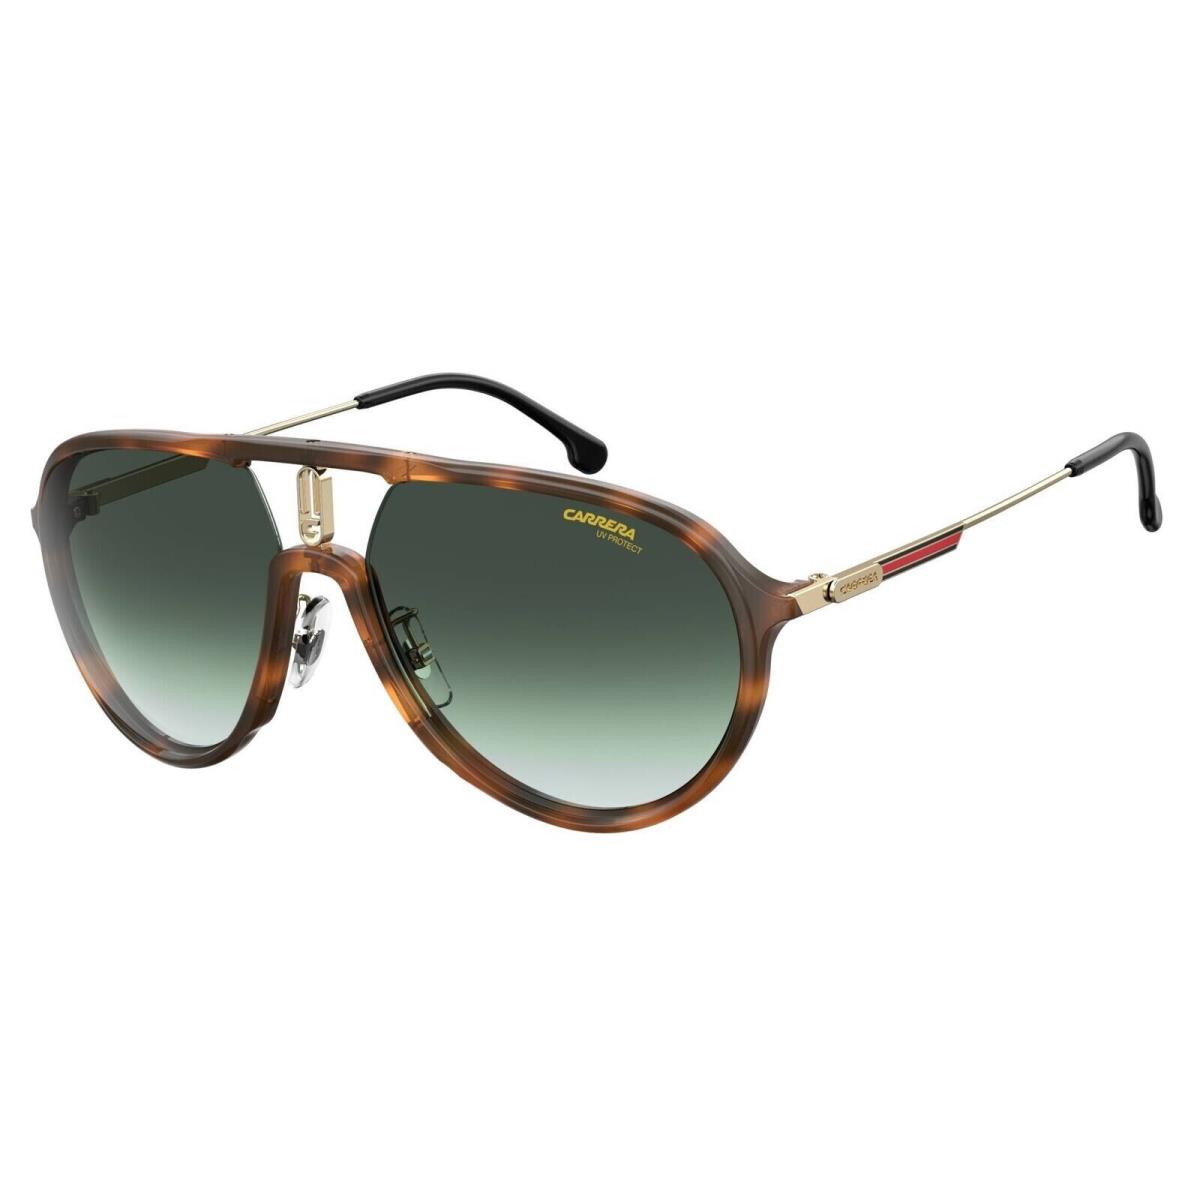 Carrera 1026S 0086 9K Sunglasses Havana Frame Green Shaded Lenses 59mm